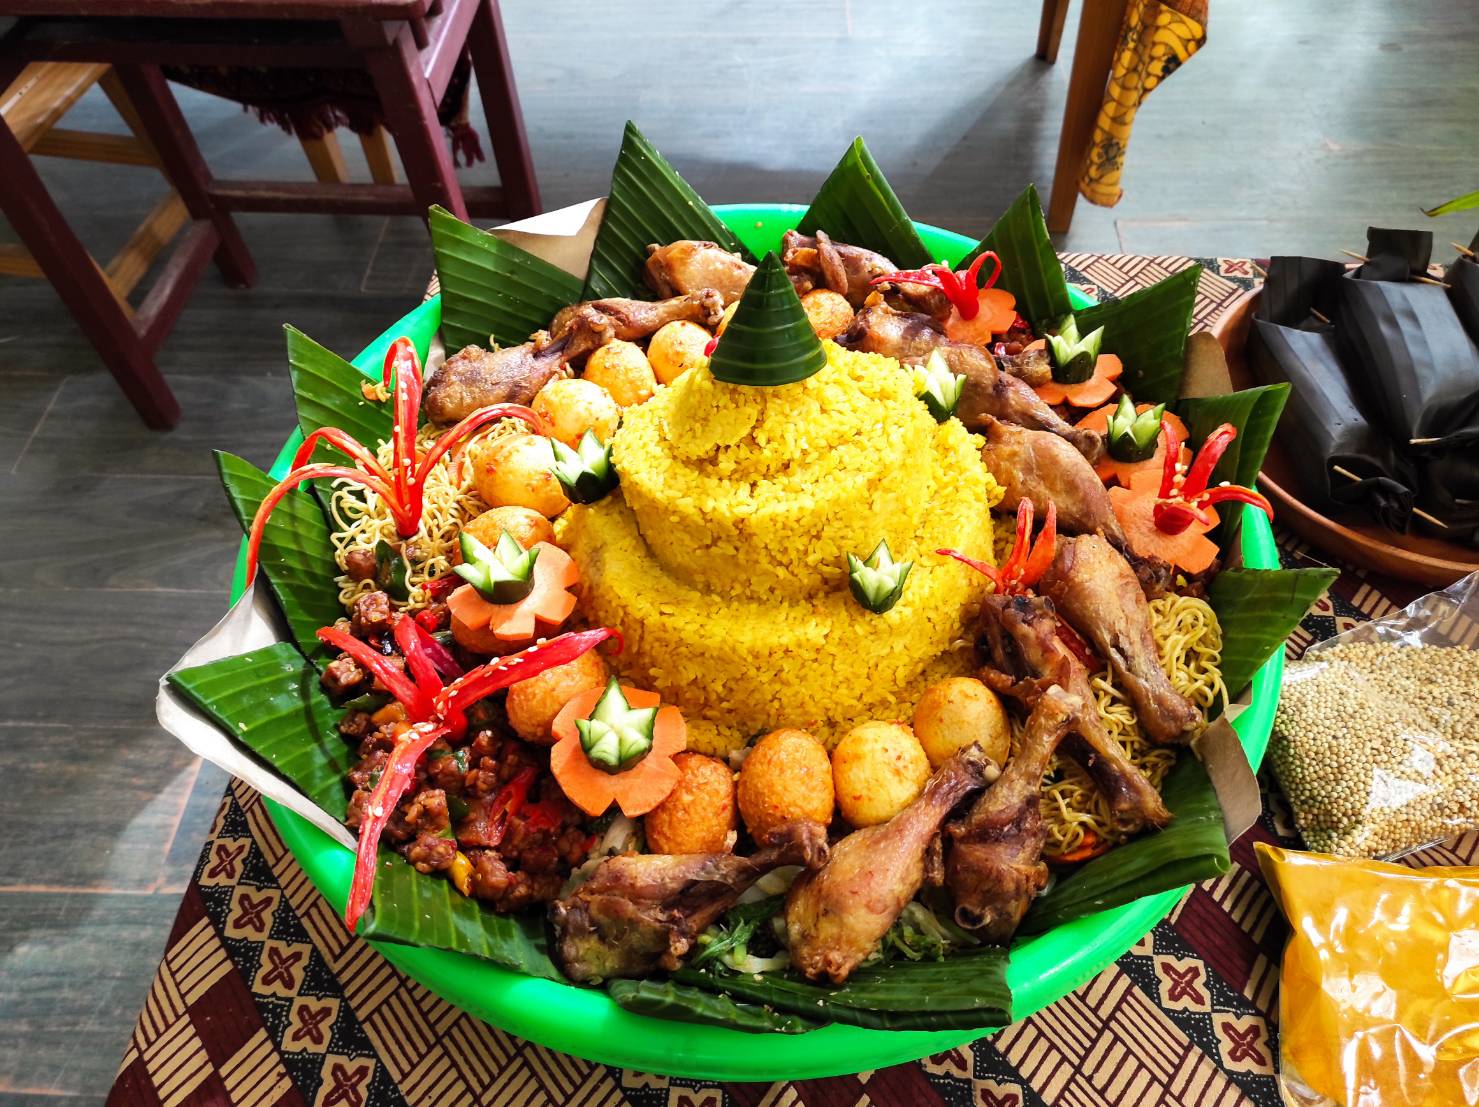 新台味多元年菜熱情提案中;分享後生人的越南客家經驗